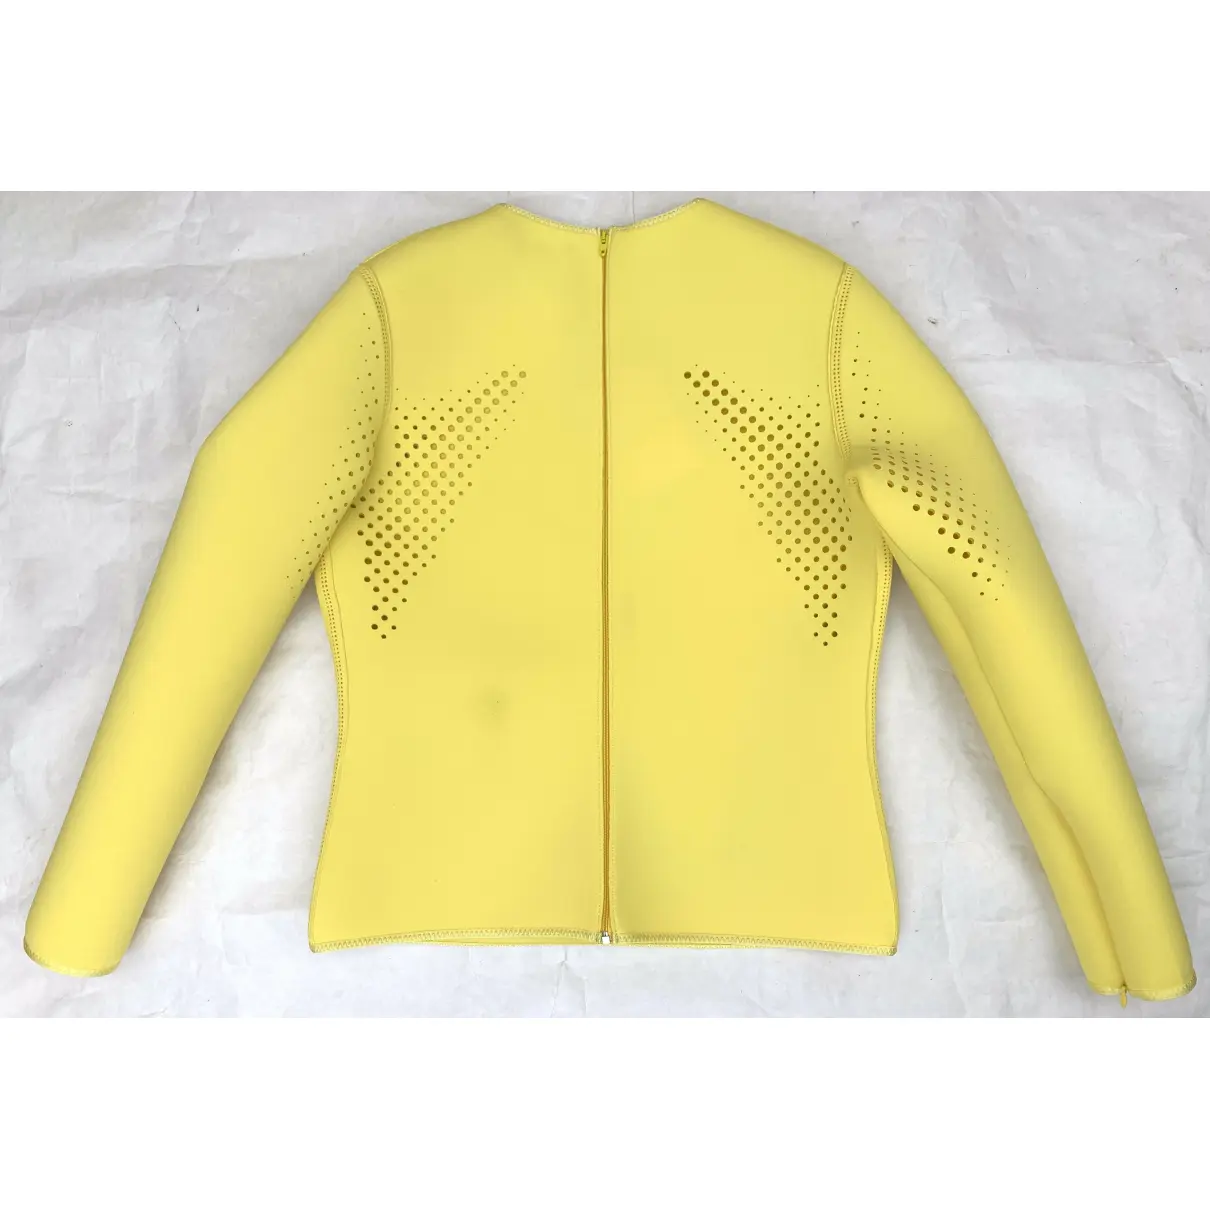 Buy Balenciaga Yellow Polyester Top online